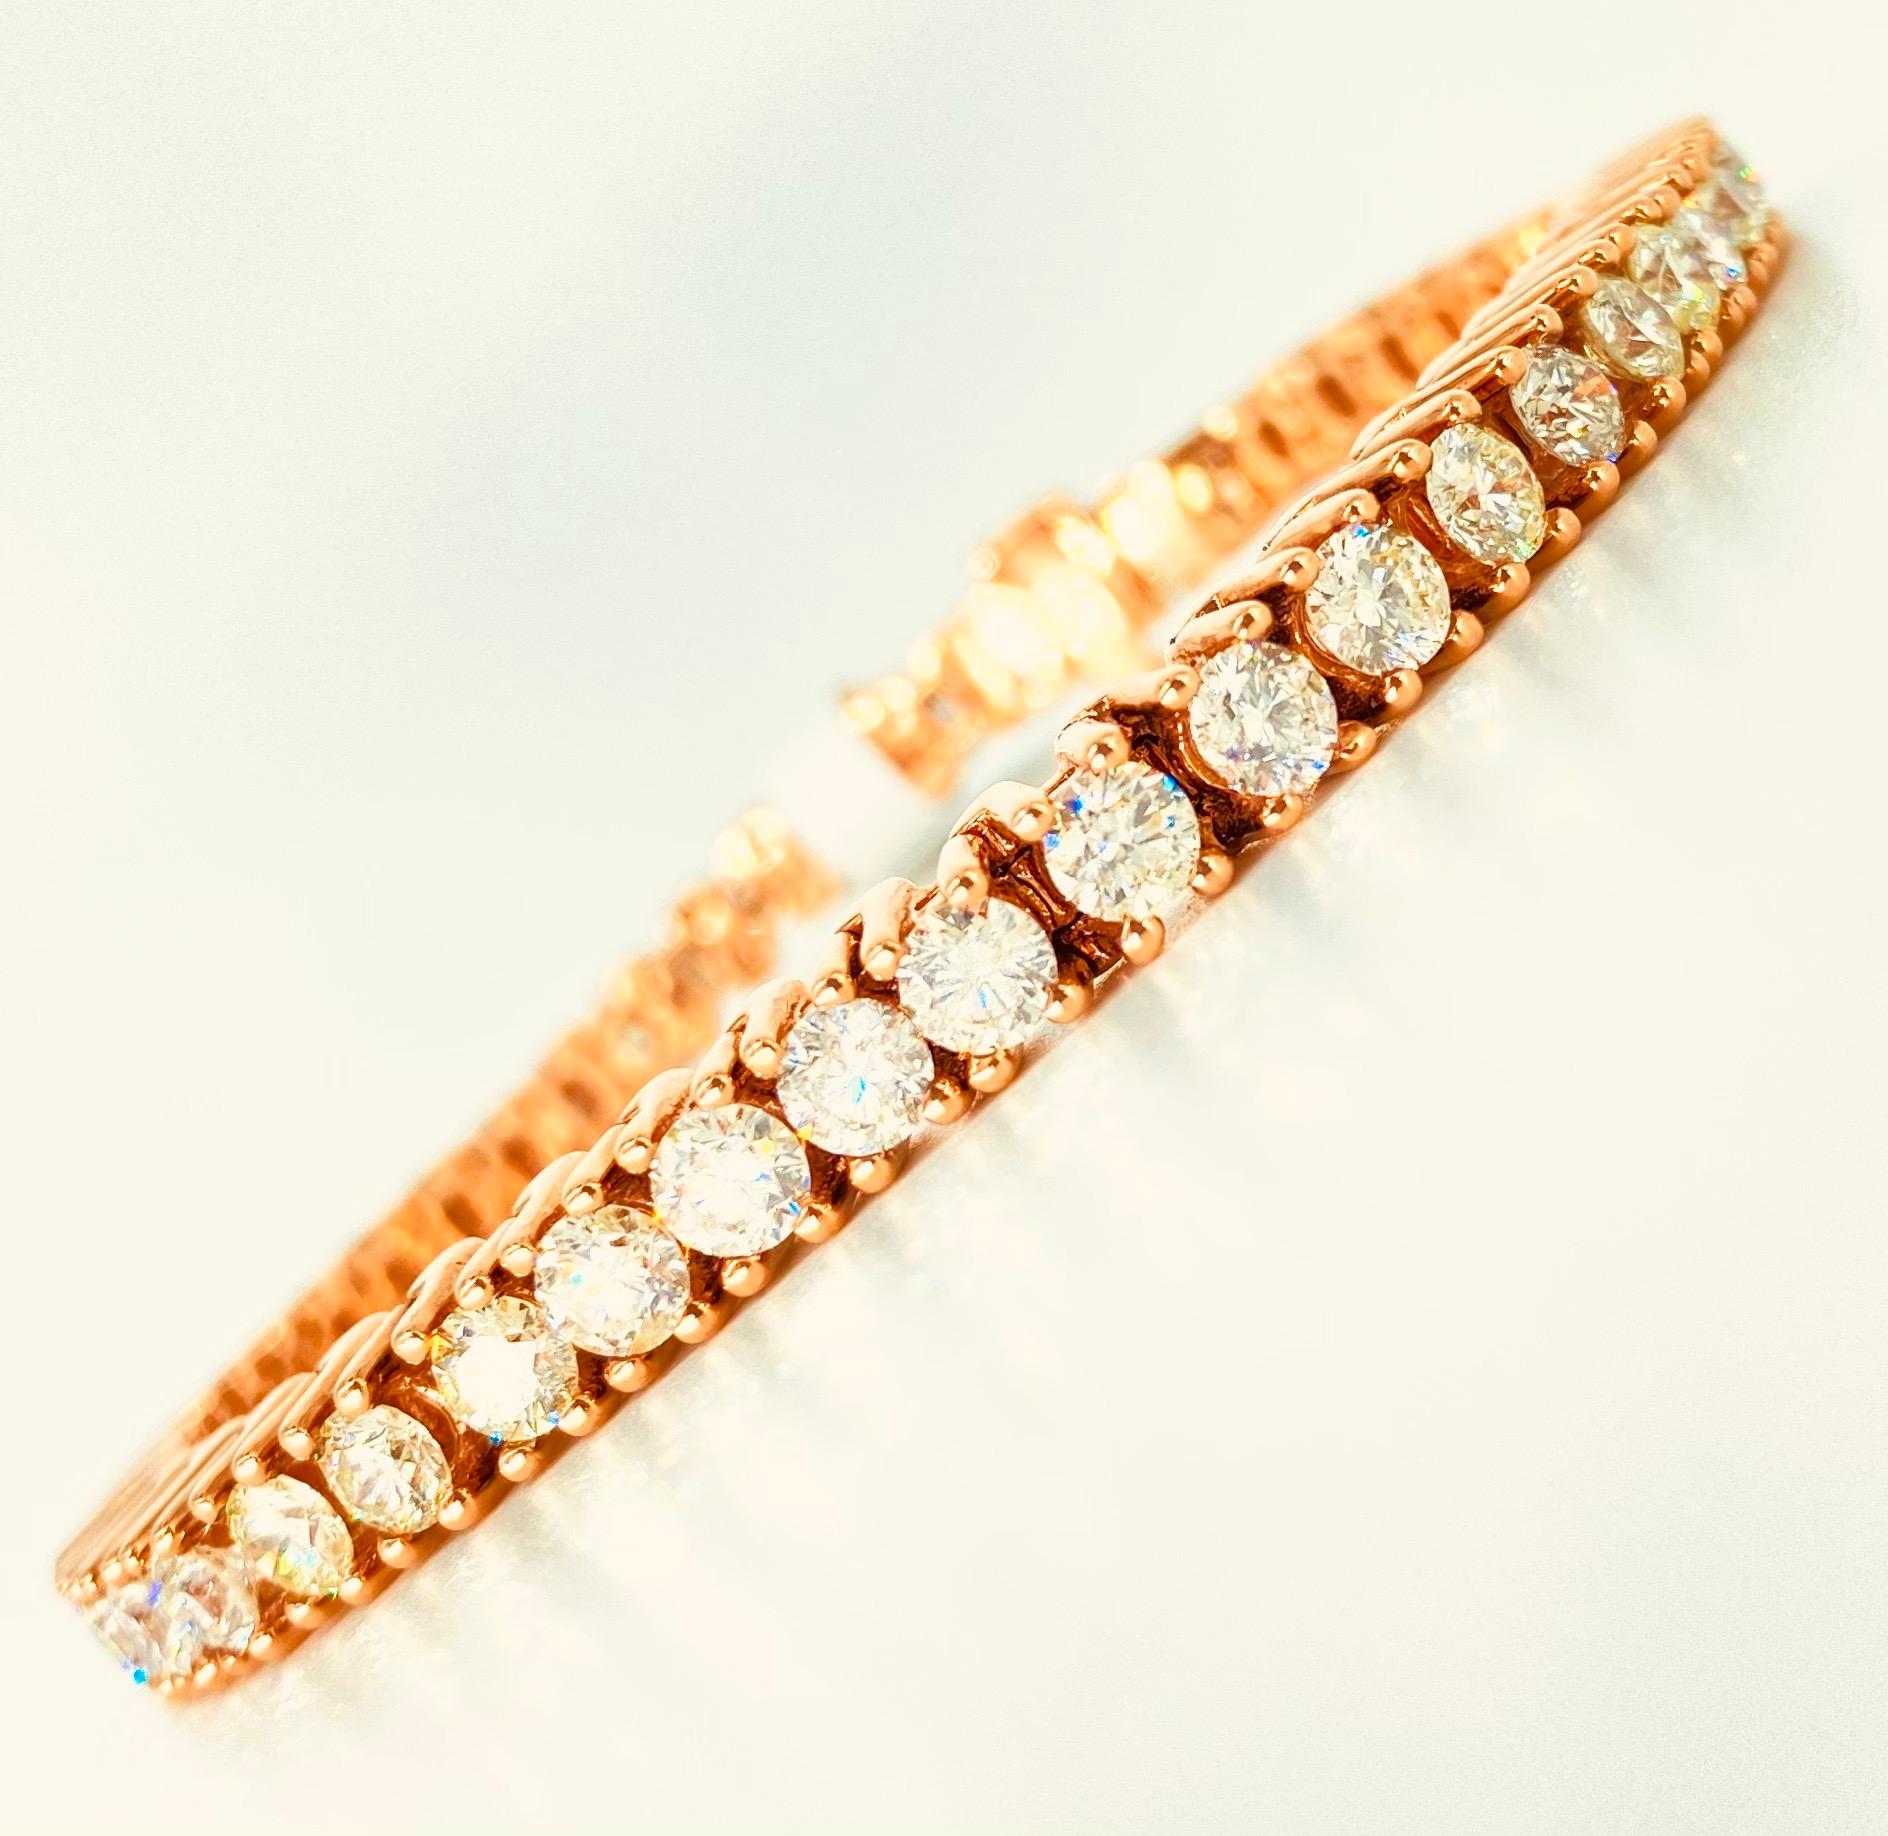 Bracelet tennis hommes 15 carats de diamants 
Largeur 5.85mm 
Or rose 10k
Clarté des diamants environ SI1 (diamants de haute qualité)
La couleur des diamants est d'environ H/I/J (un mélange très audacieux qui s'harmonise sur tout le bracelet, chaque